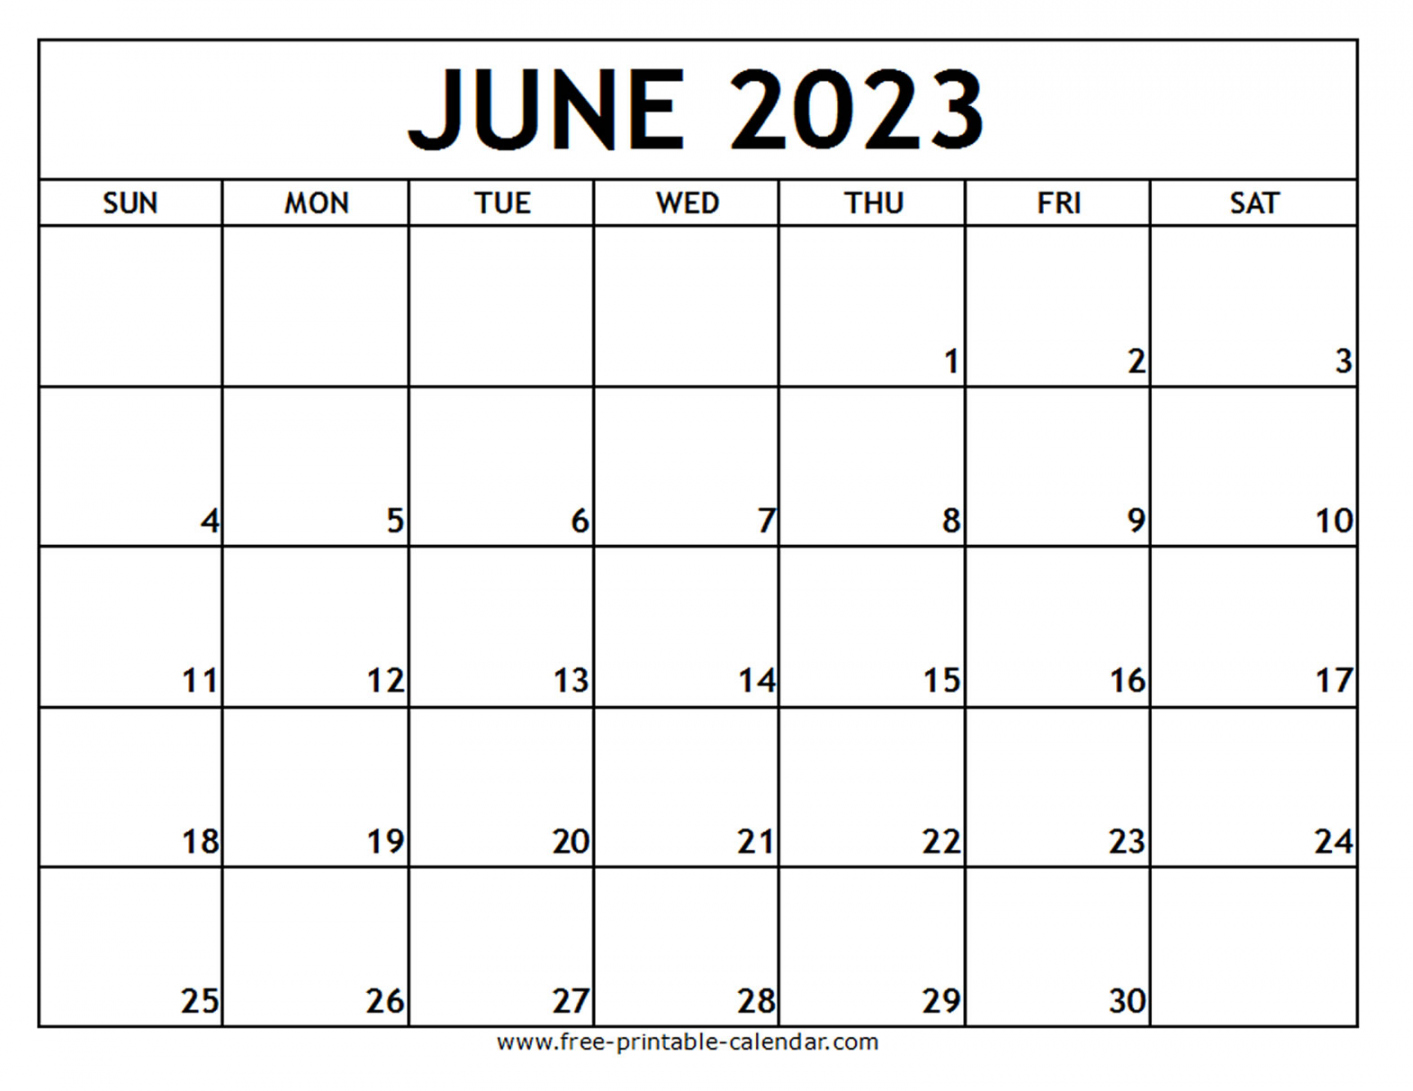 Free Printable Calendar June July August 2023 - Printable - June  Printable Calendar - Free-printable-calendar